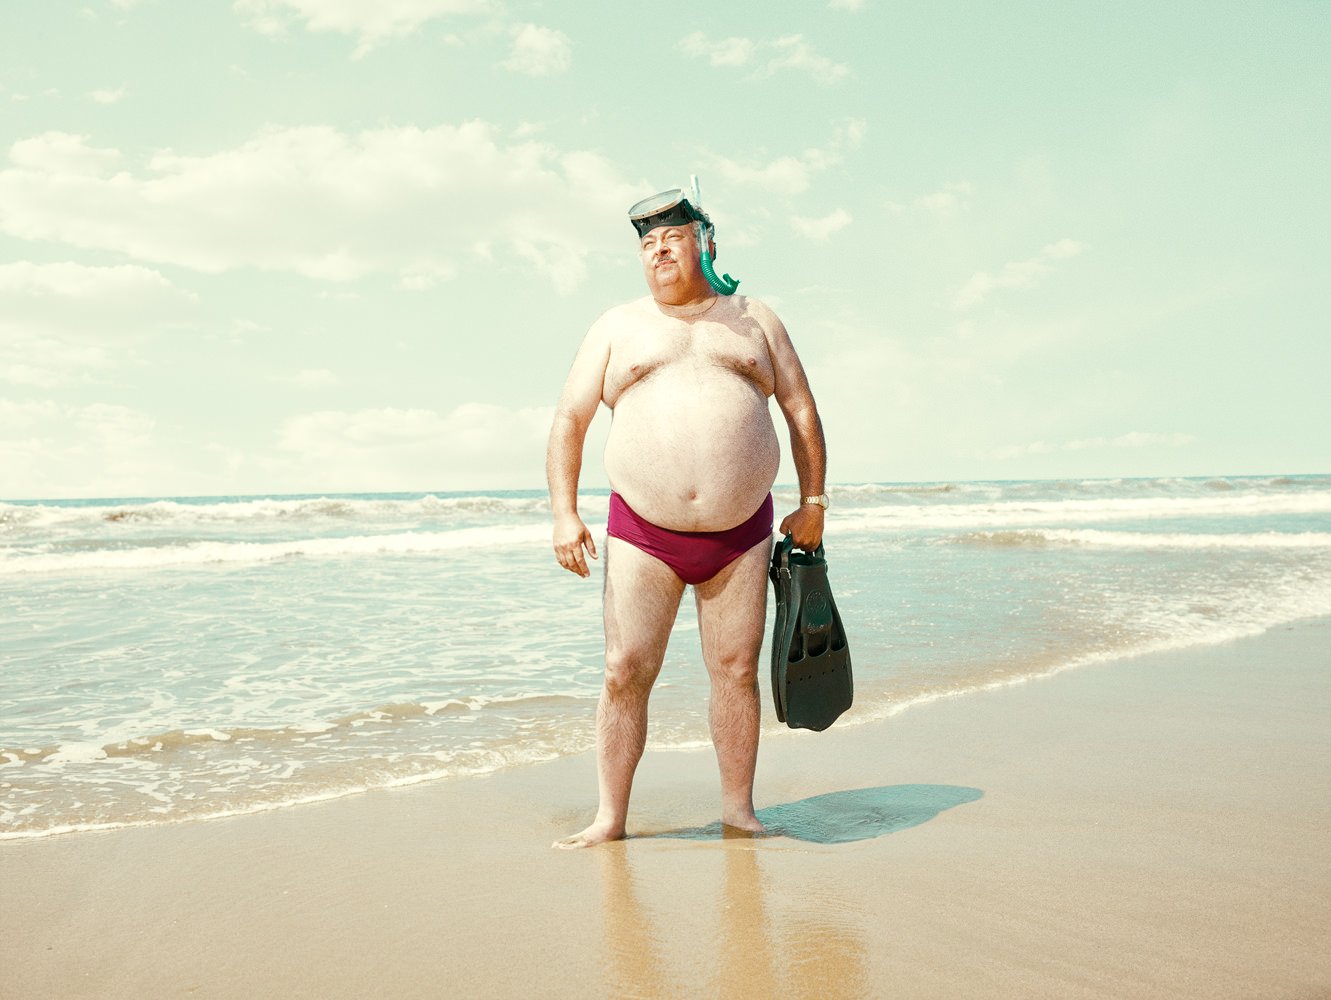 Много толстых мужиков. Тошстыц мужик на пляже.